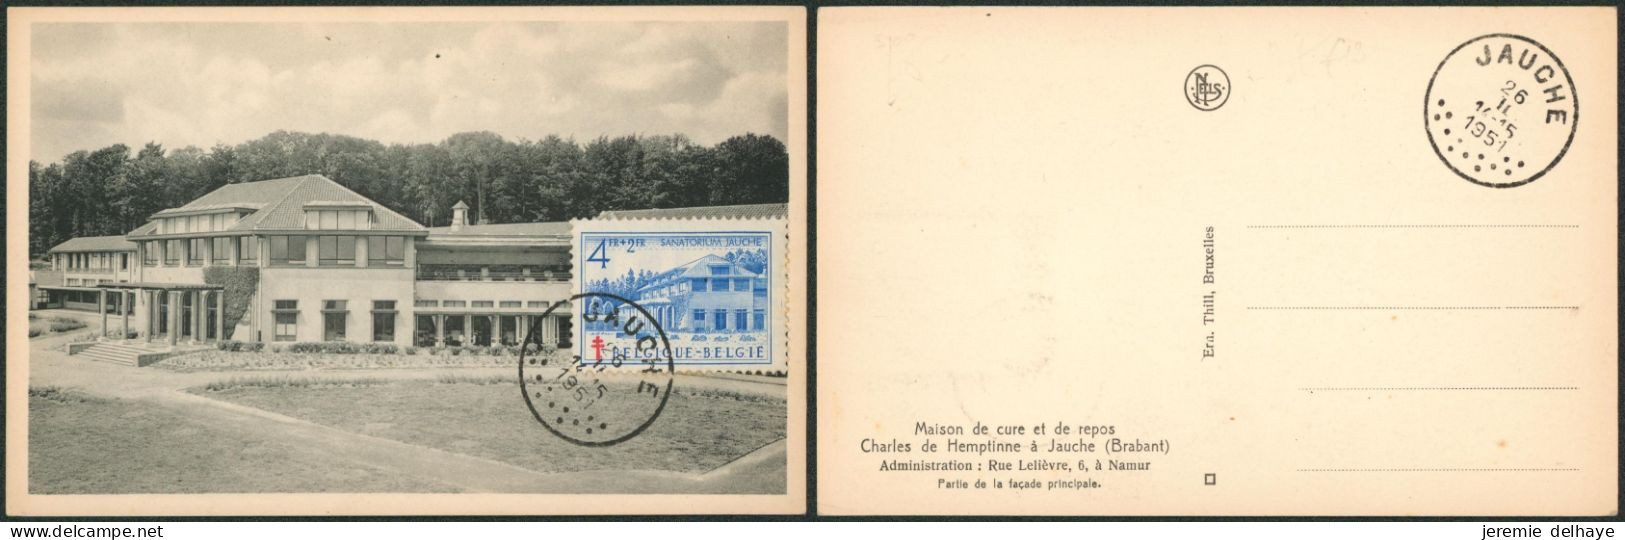 Carte-maximum (CM) - Antituberculeux (sanatorium) N°839 Jauche - 1934-1951